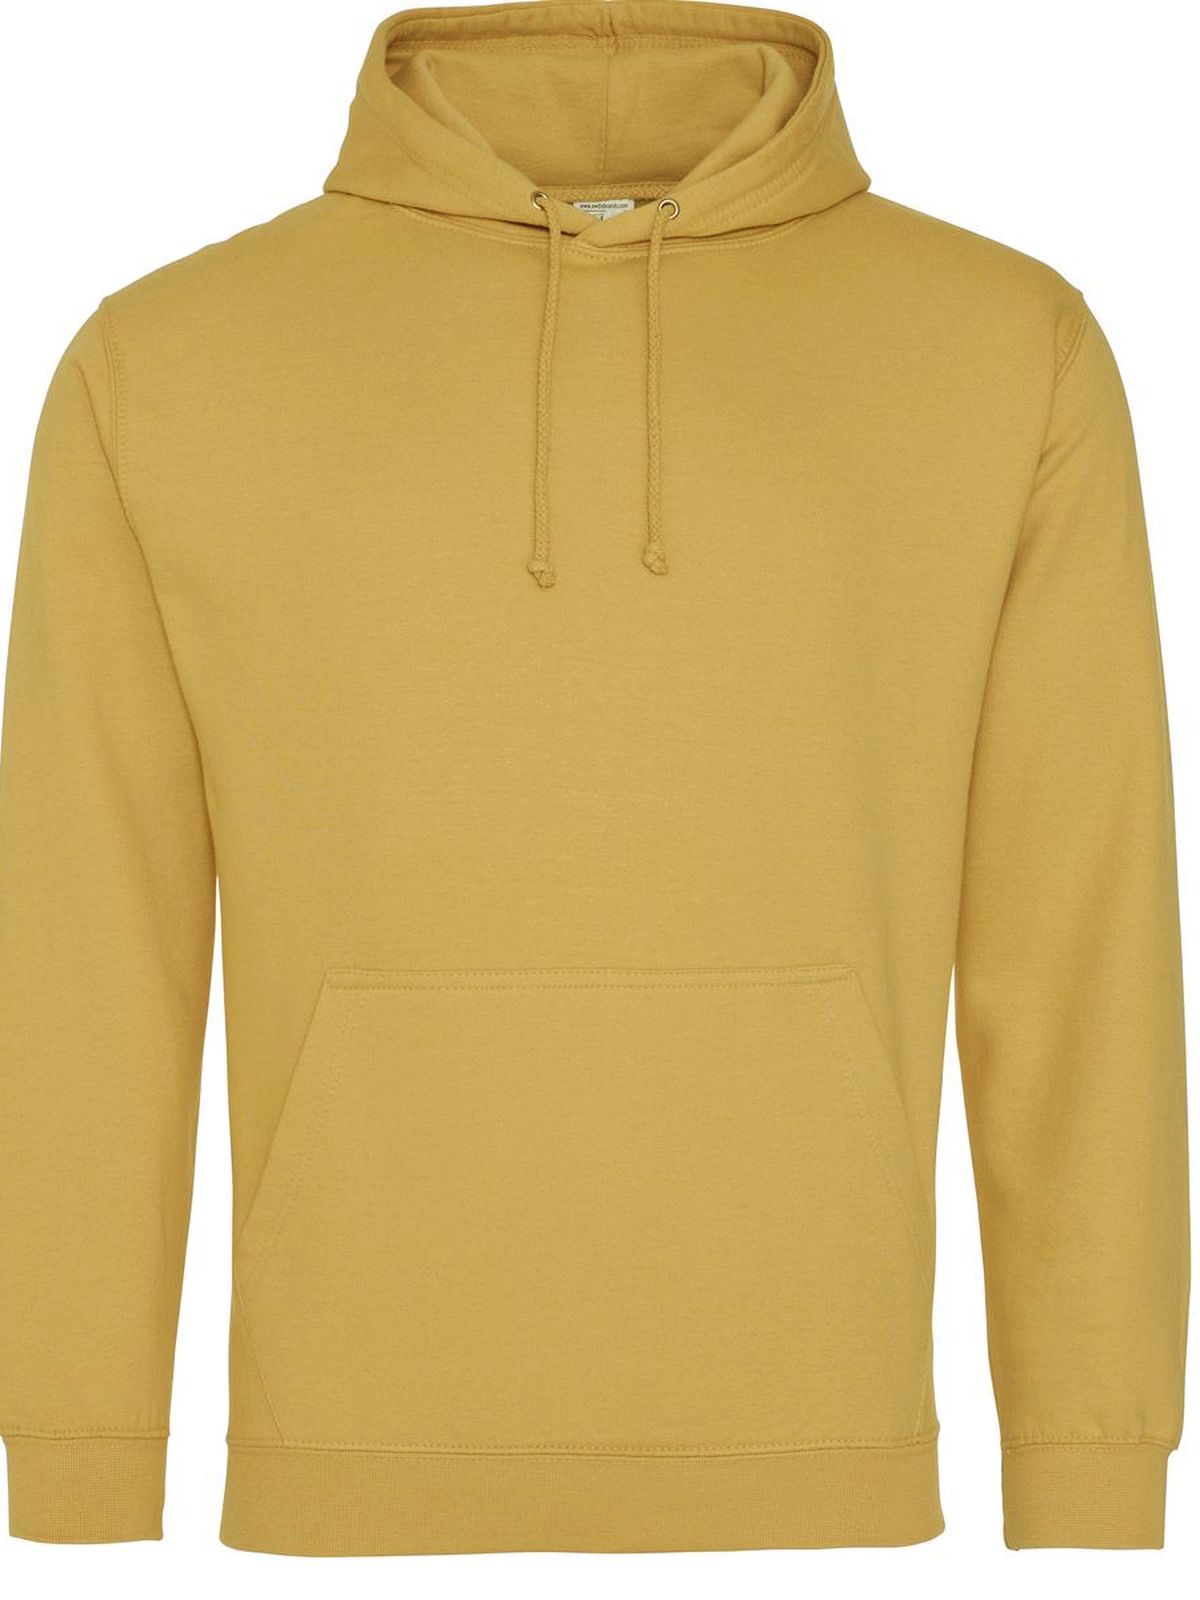 college-hoodie-mustard.webp